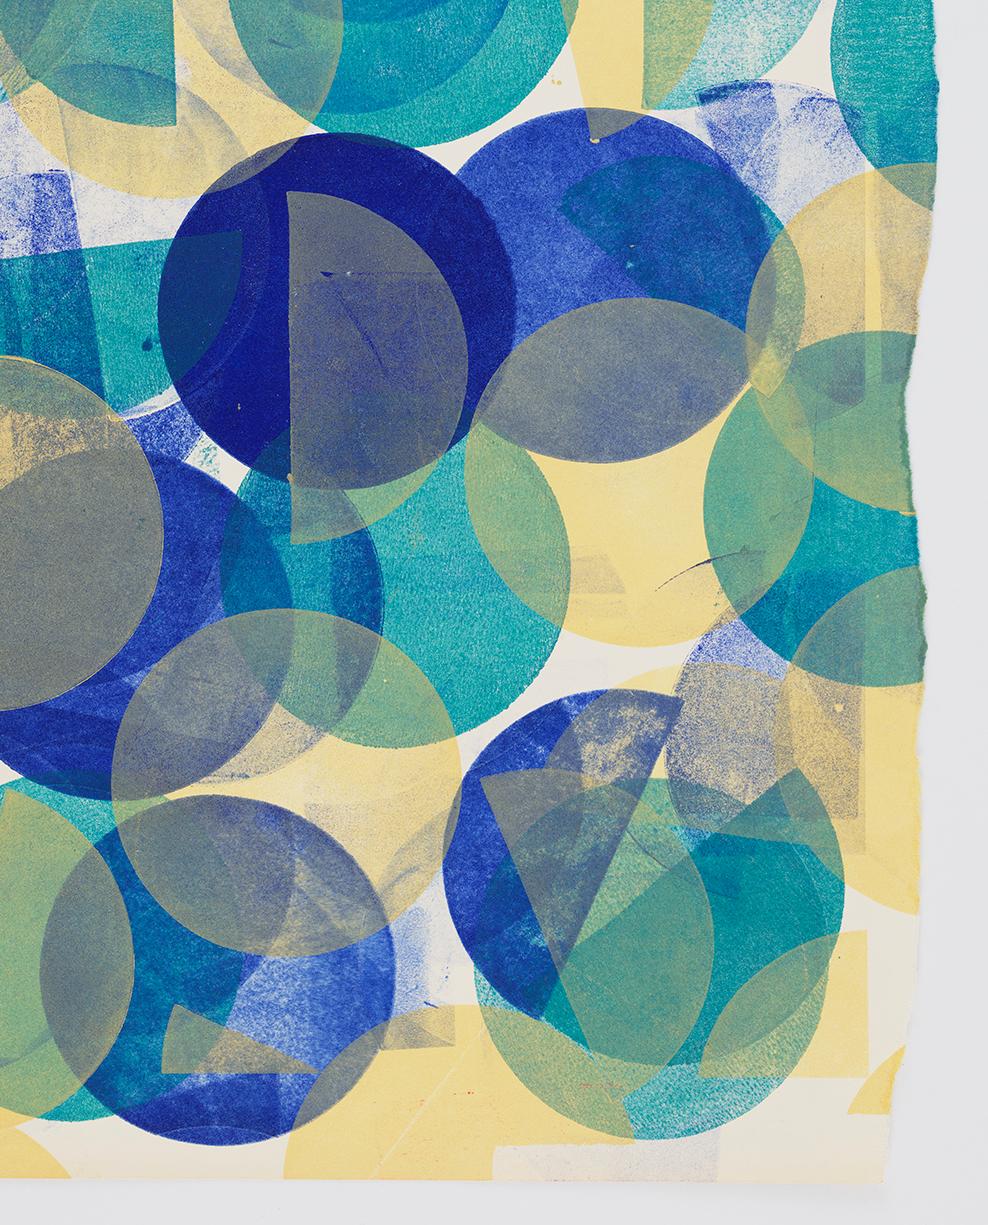 Small Circles of Blue - Gray Abstract Print by Austin Thomas